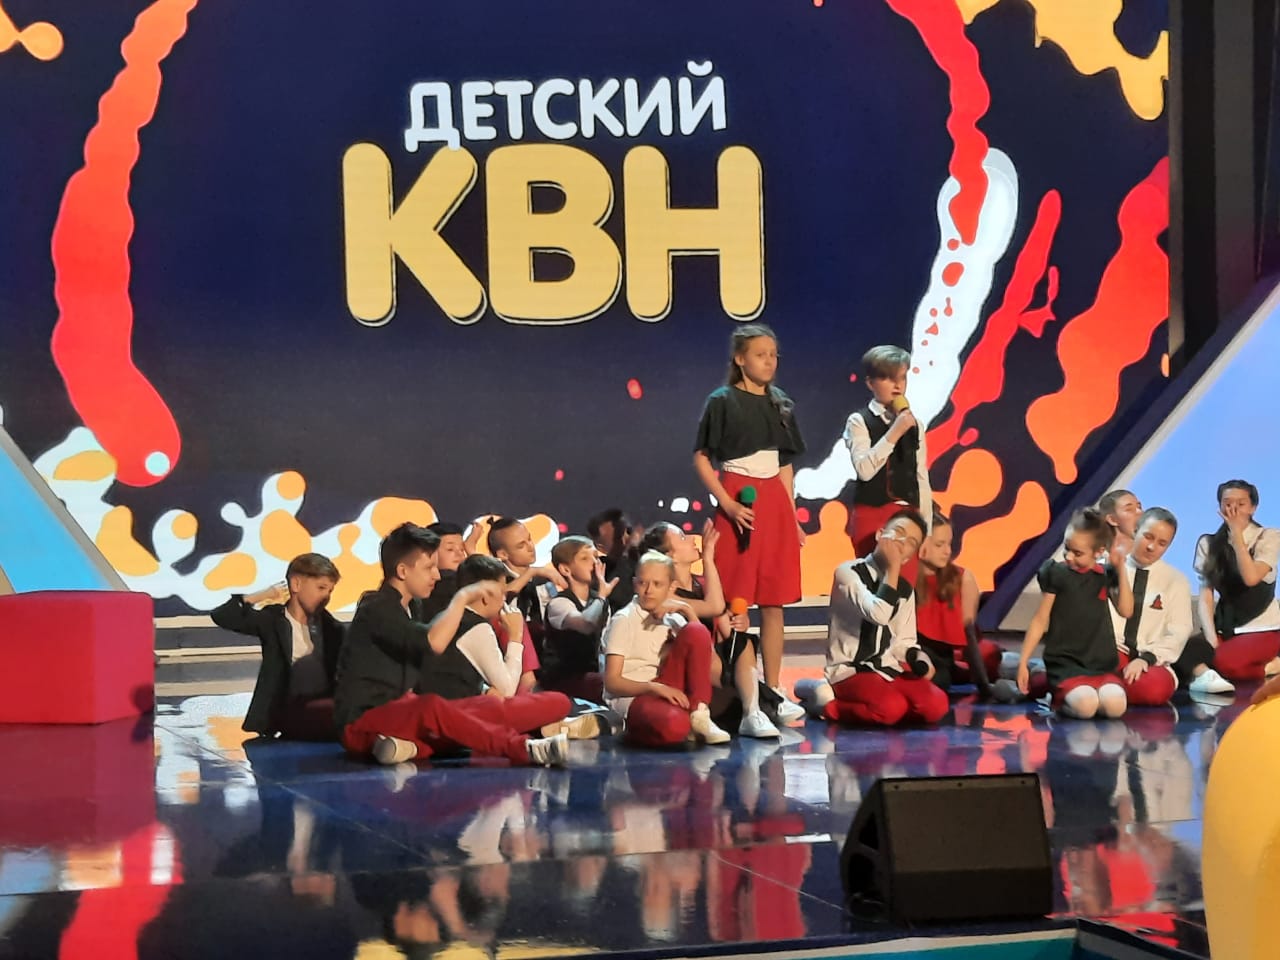 Детскую команду КВН из Брянской области покажут в эфире Первого канала